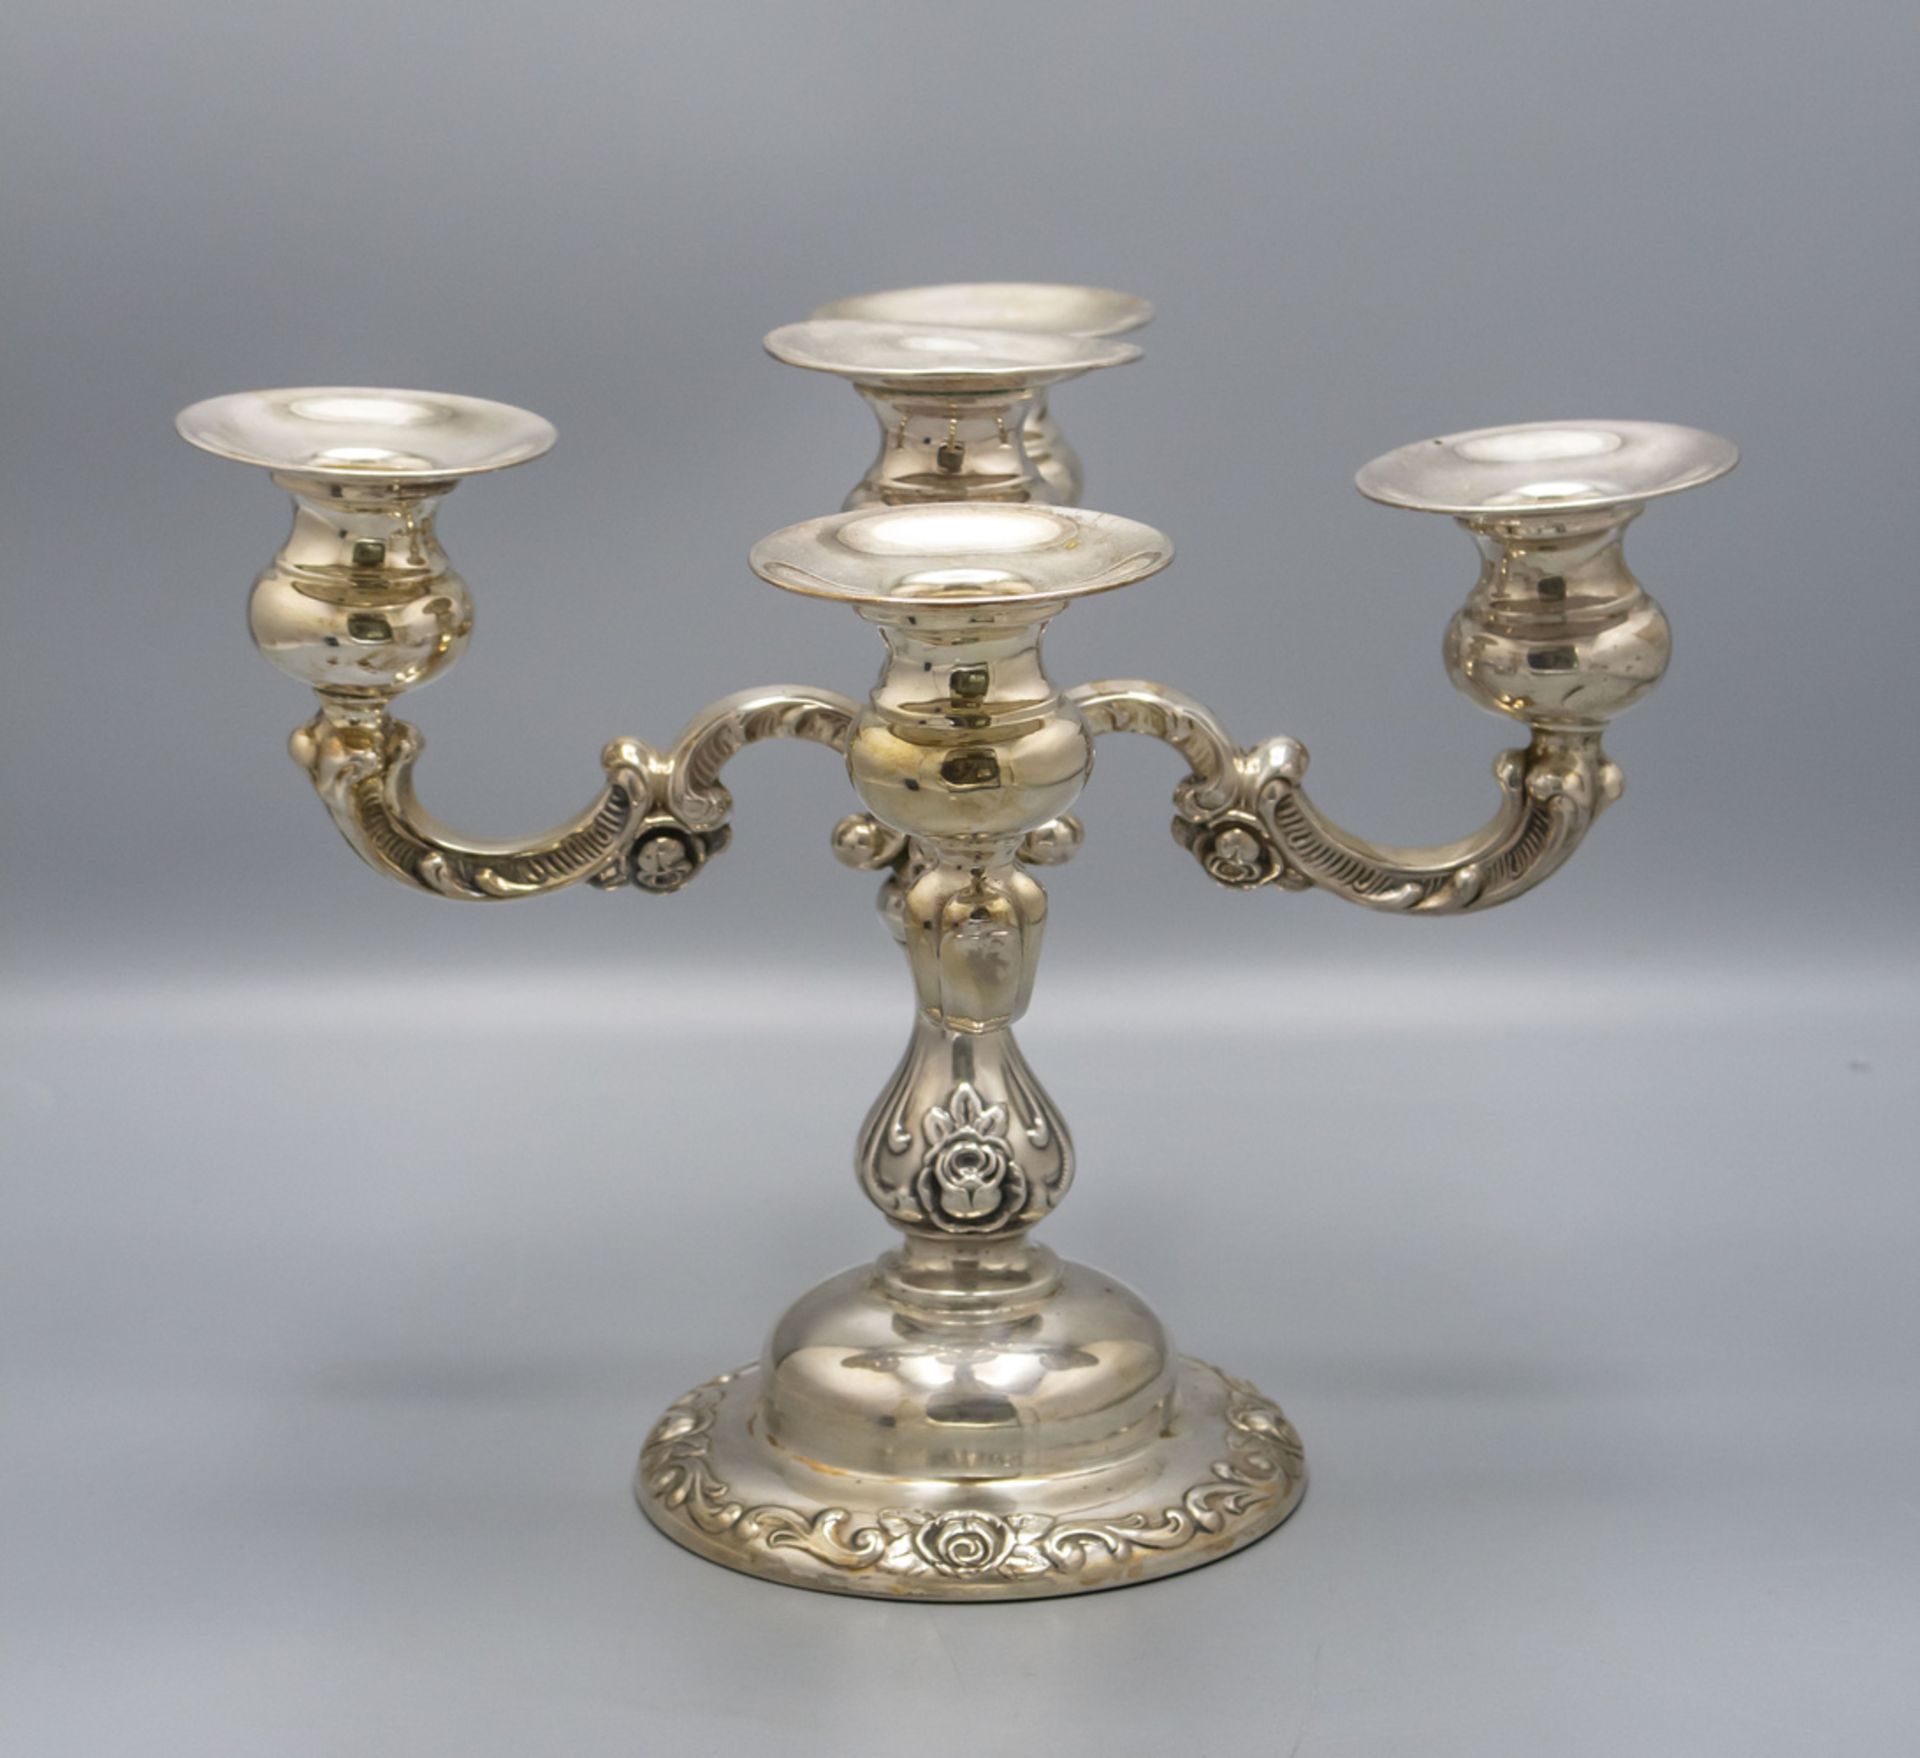 5-flammiger Tafelleuchter / A 5-branch Sterling silver candelabra, Emil Hermann, Waldstetten, ... - Image 2 of 5